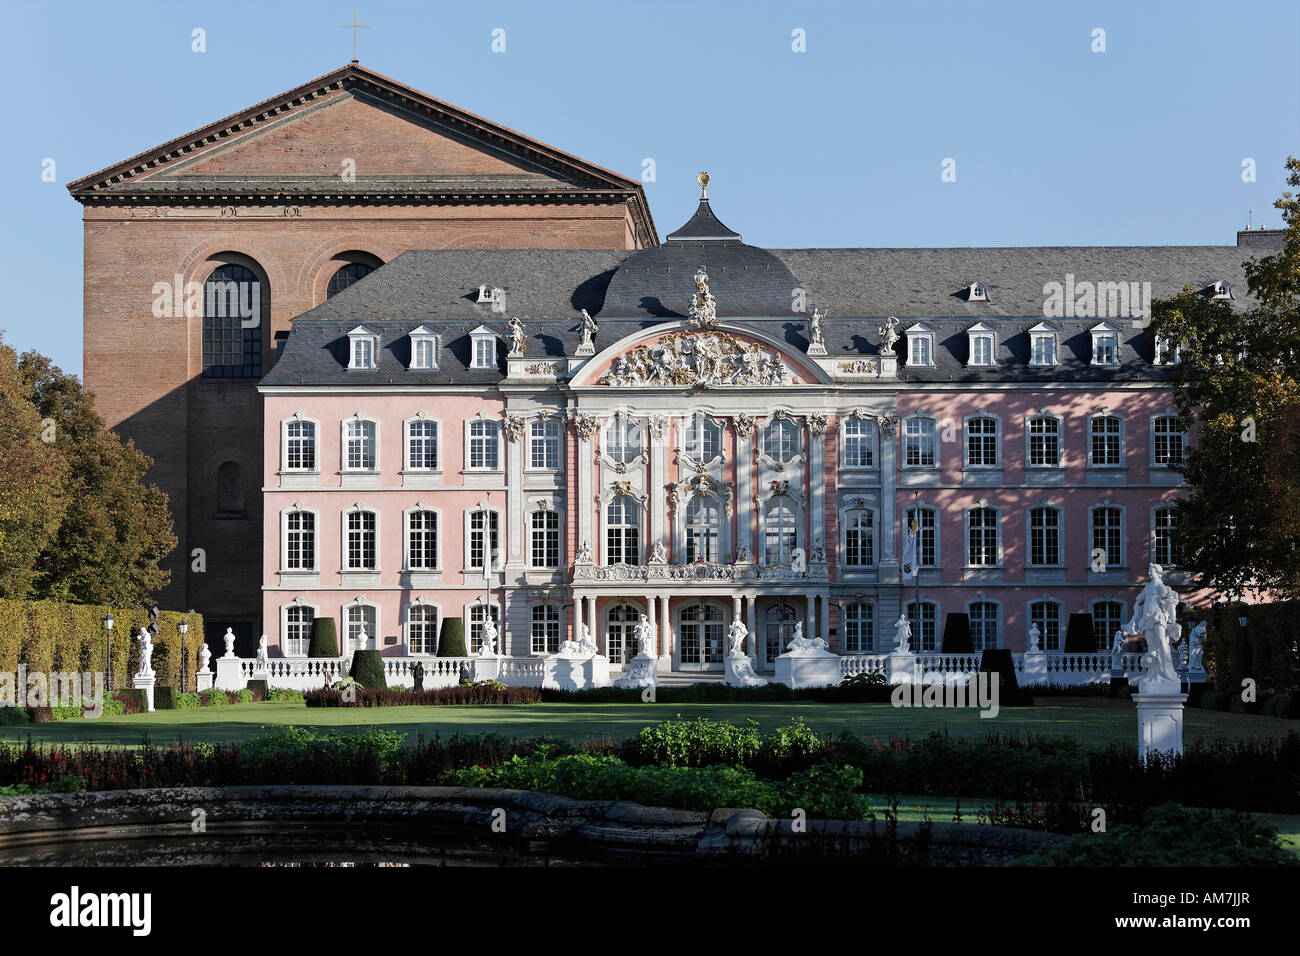 Palace of the prince elector, Basilika, Trier, Rhineland-Palatinate, Germany Stock Photo